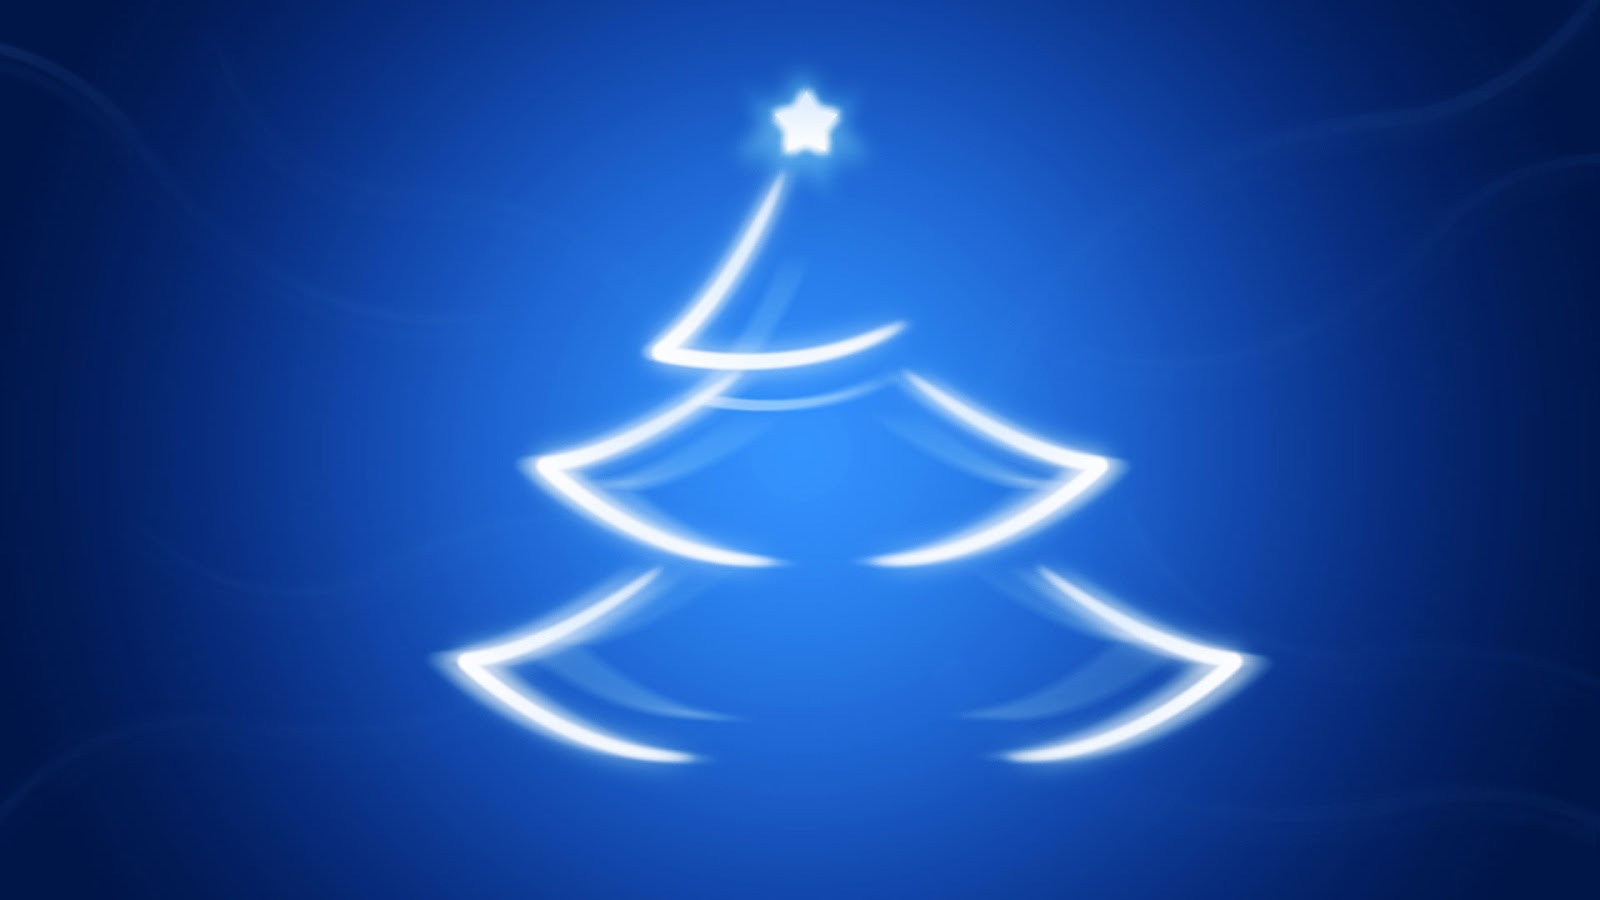 http://1.bp.blogspot.com/-fTMJEVuDSnQ/USXS-wS3-gI/AAAAAAAAVPU/cVTtLhxRihI/s1600/christmas-tree-desktop-&amp;amp;-mac-wallpaper.jpg